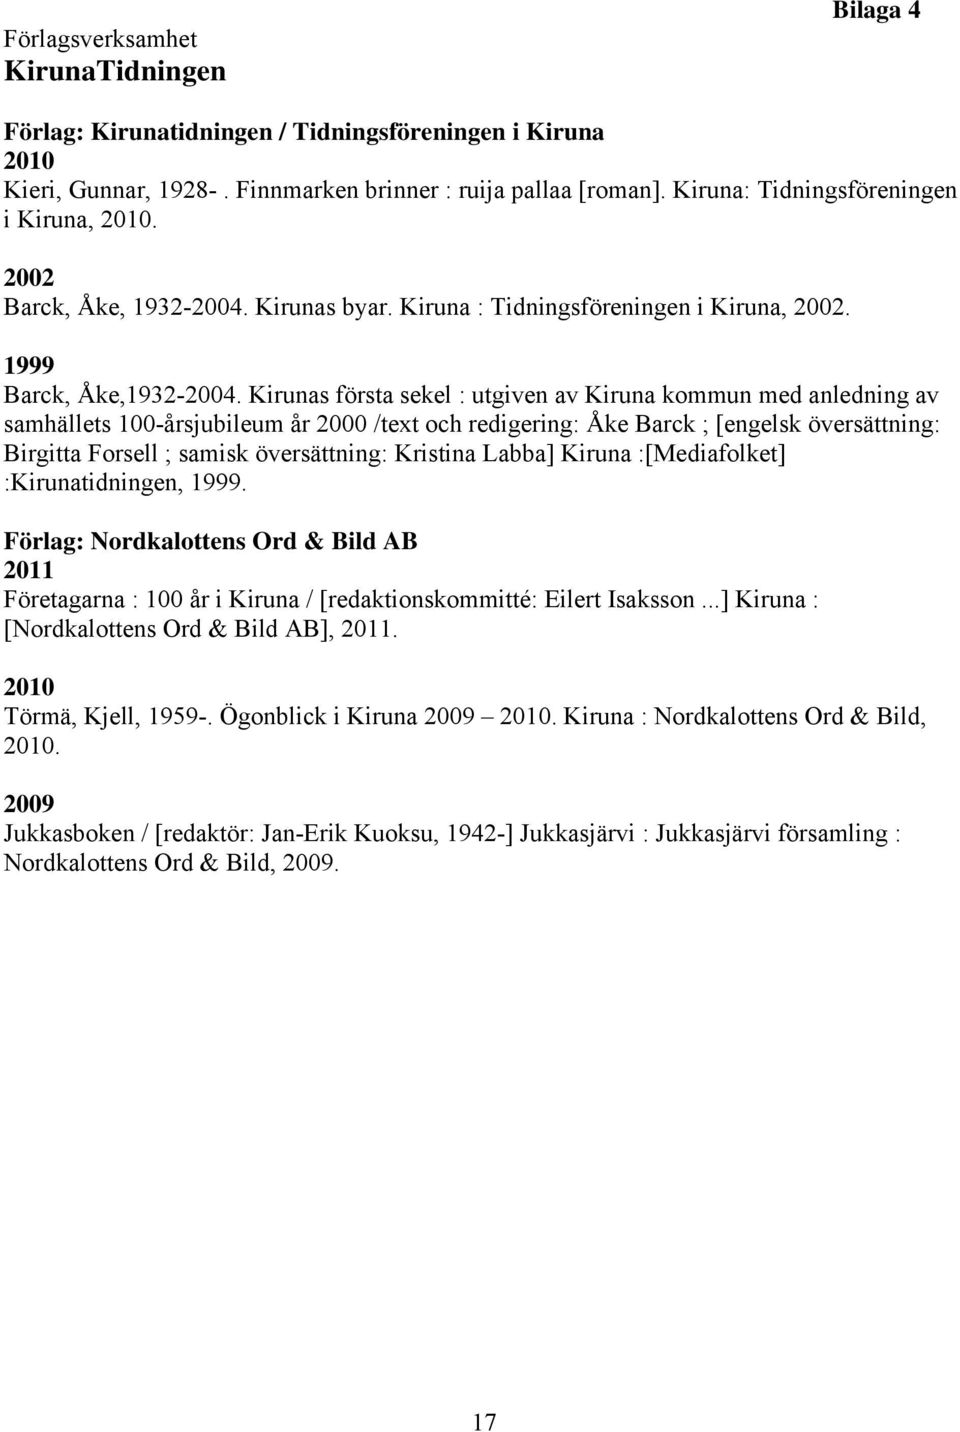 Kirunas första sekel : utgiven av Kiruna kommun med anledning av samhällets 100-årsjubileum år 2000 /text och redigering: Åke Barck ; [engelsk översättning: Birgitta Forsell ; samisk översättning: